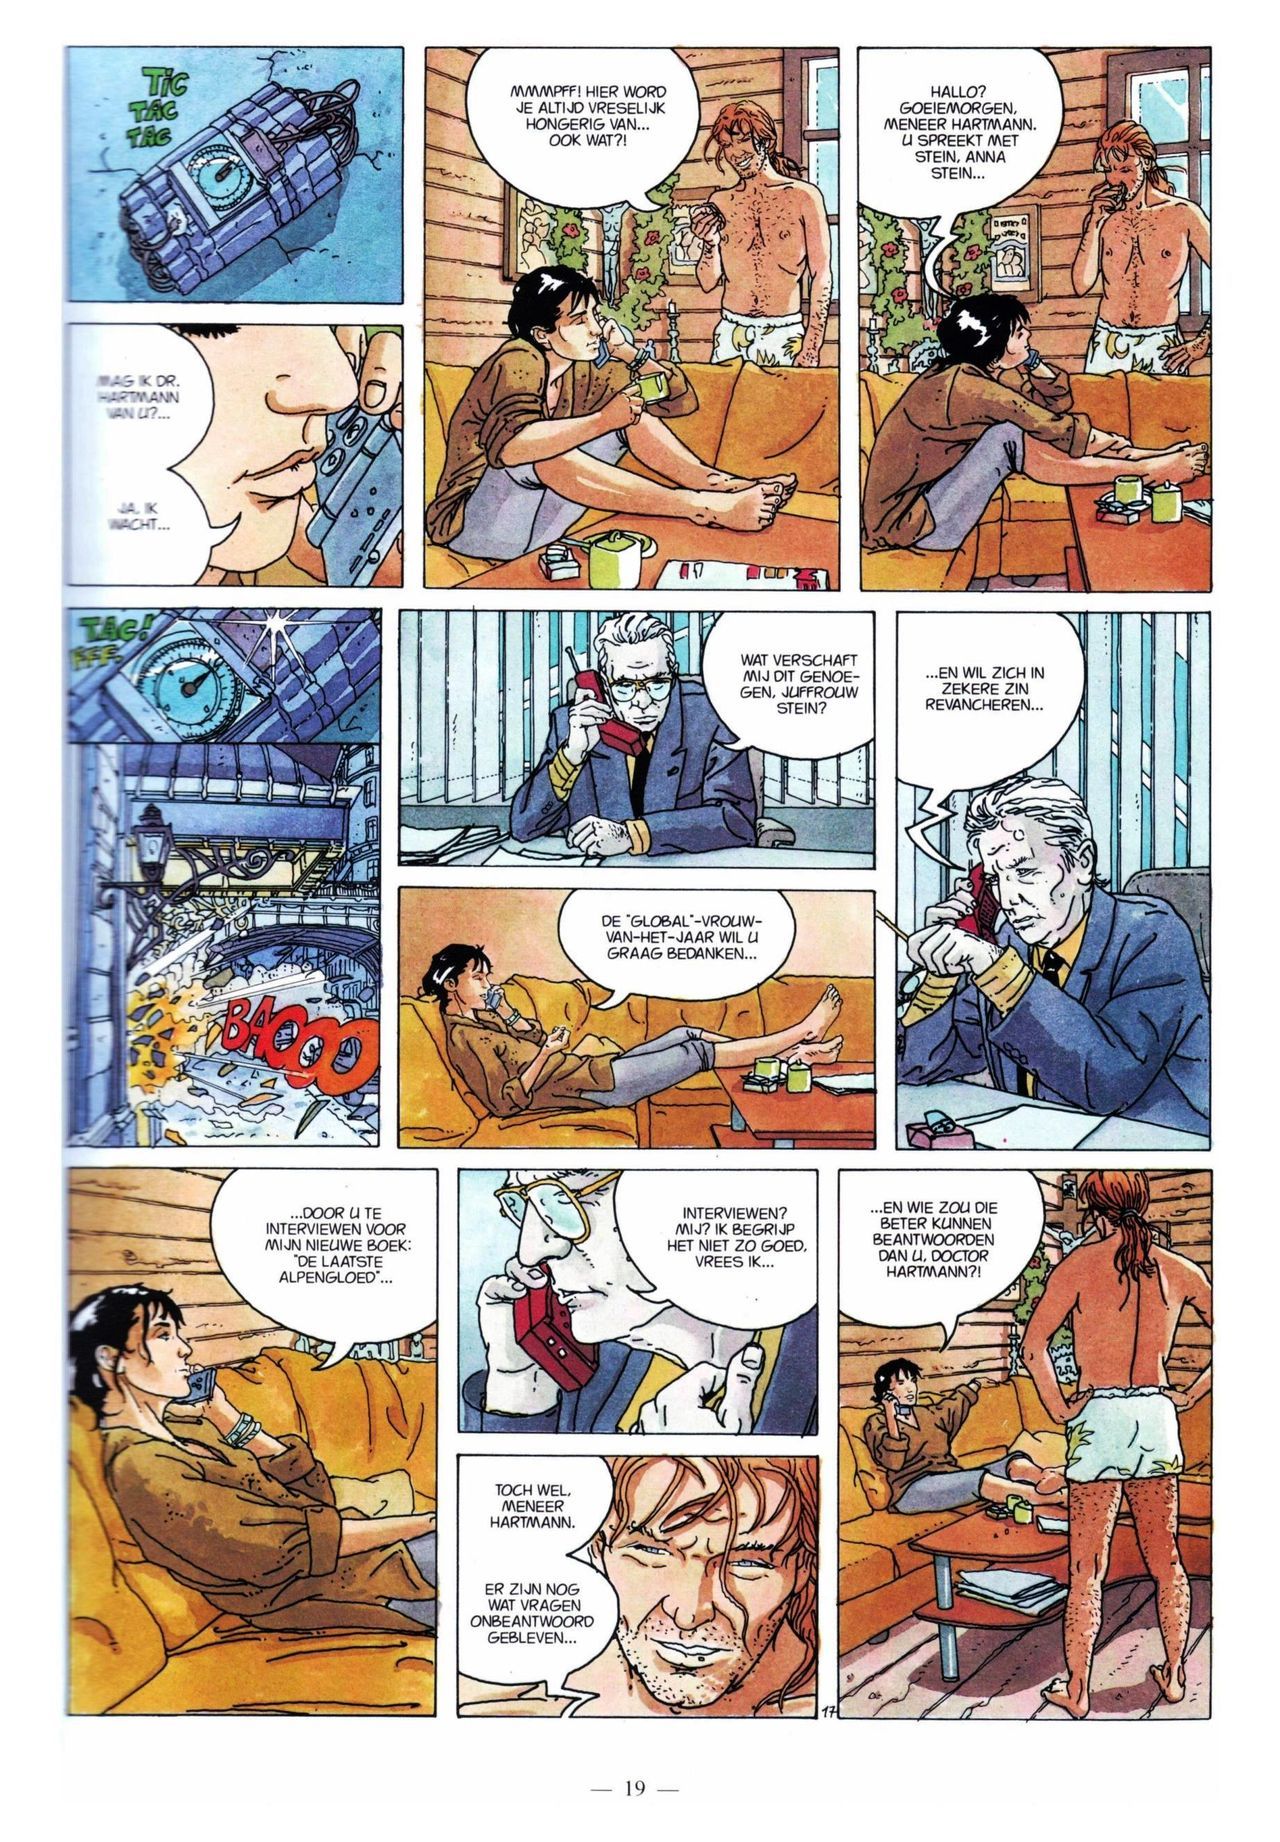 Anna Stein - 03 - De Laatste Alpengloed (Dutch) Engelstalige strips die op deze site staan, hier is de Nederlandse uitgave! 19